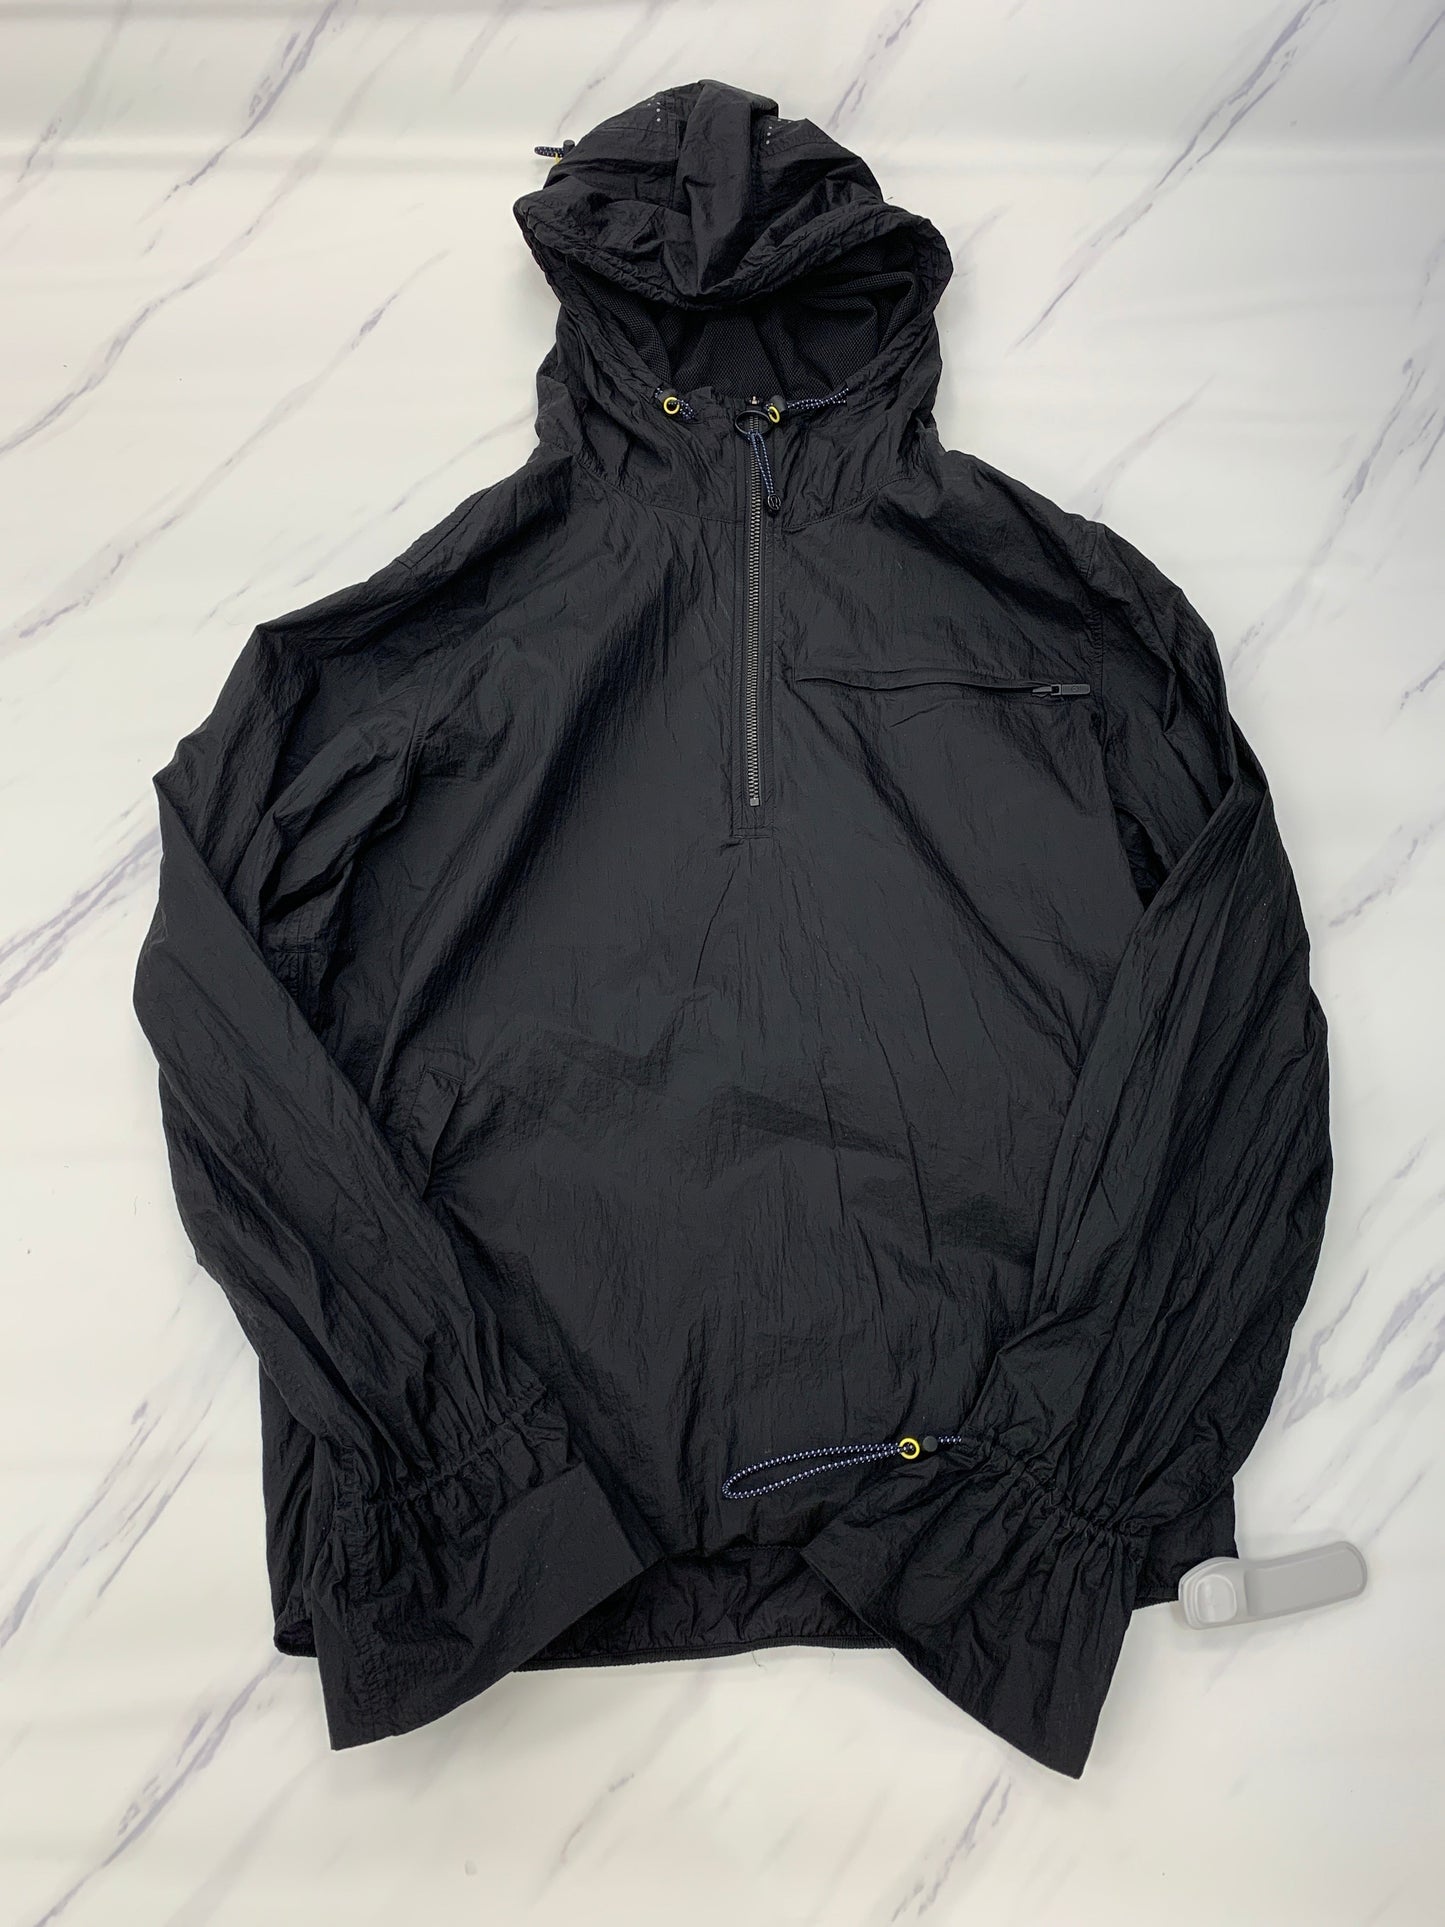 Black Athletic Jacket Lululemon, Size L